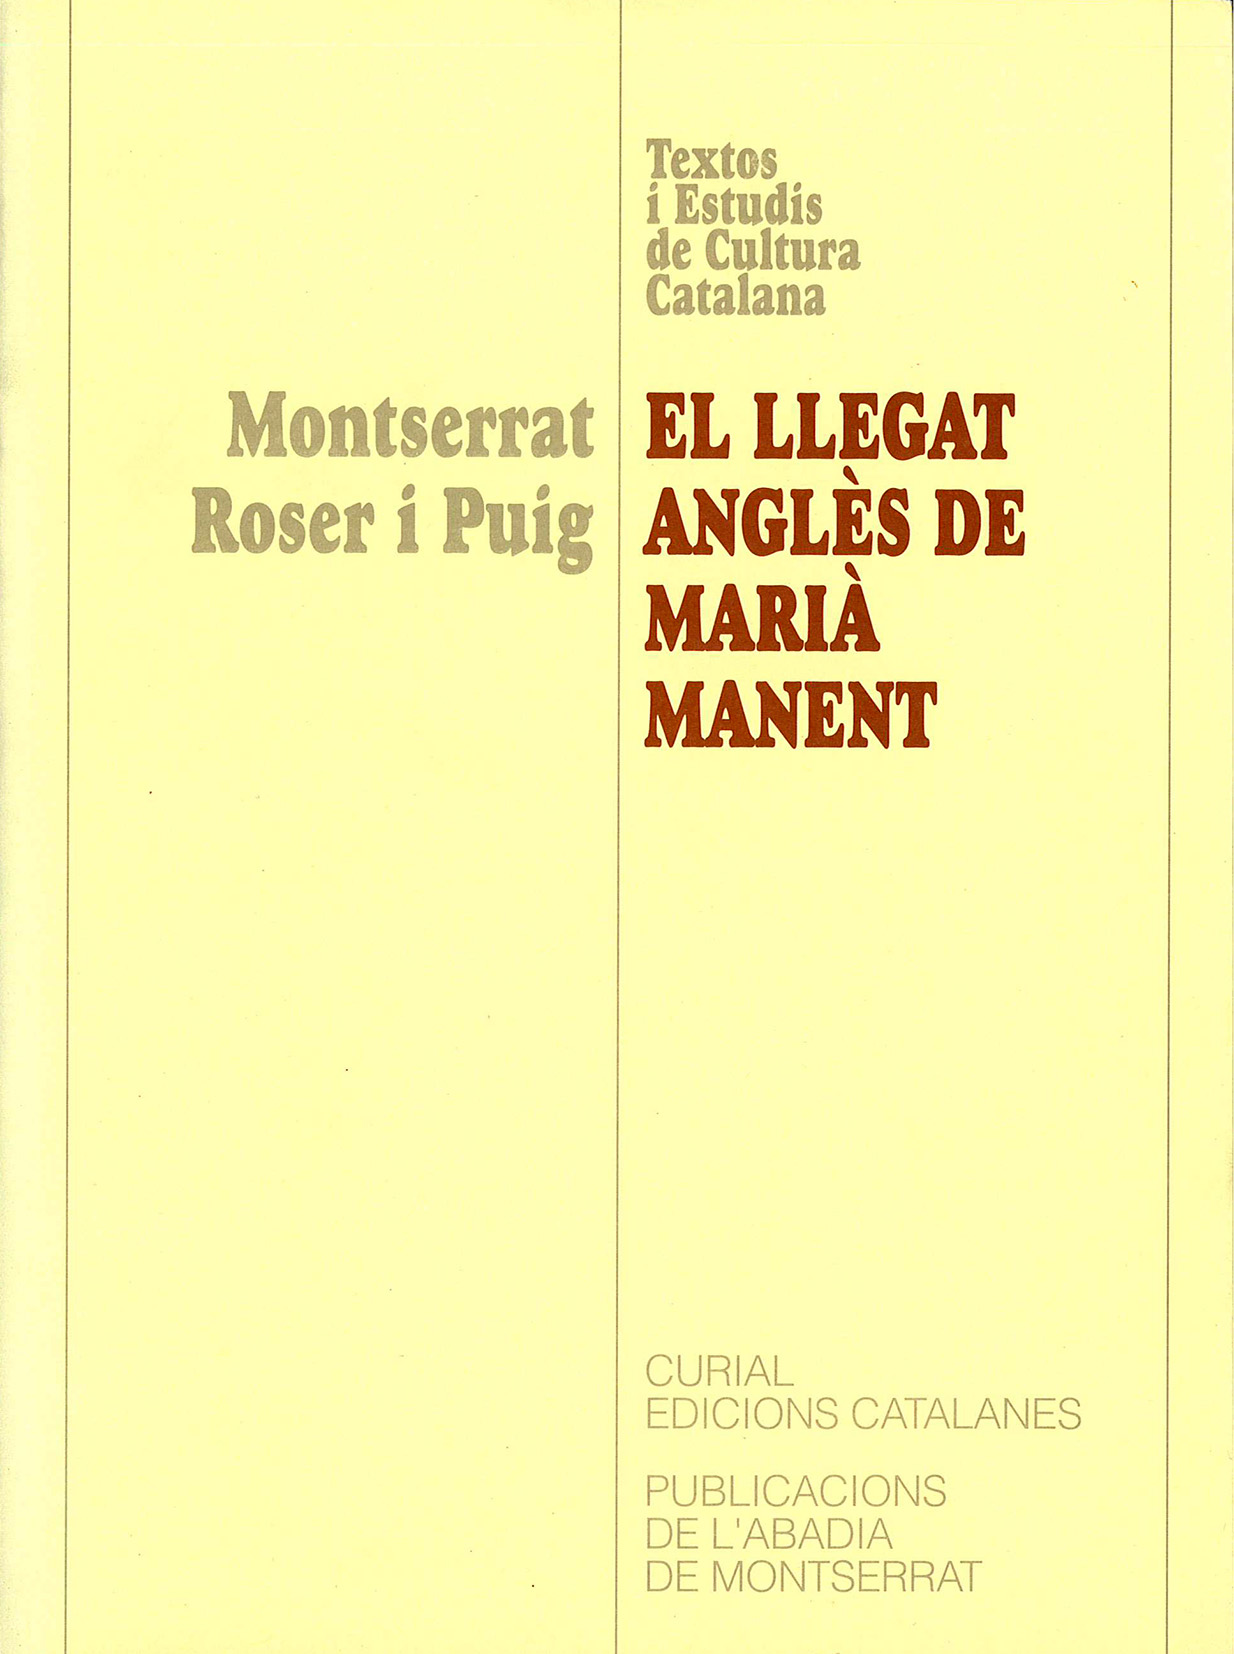 Montserrat Roser i Puig